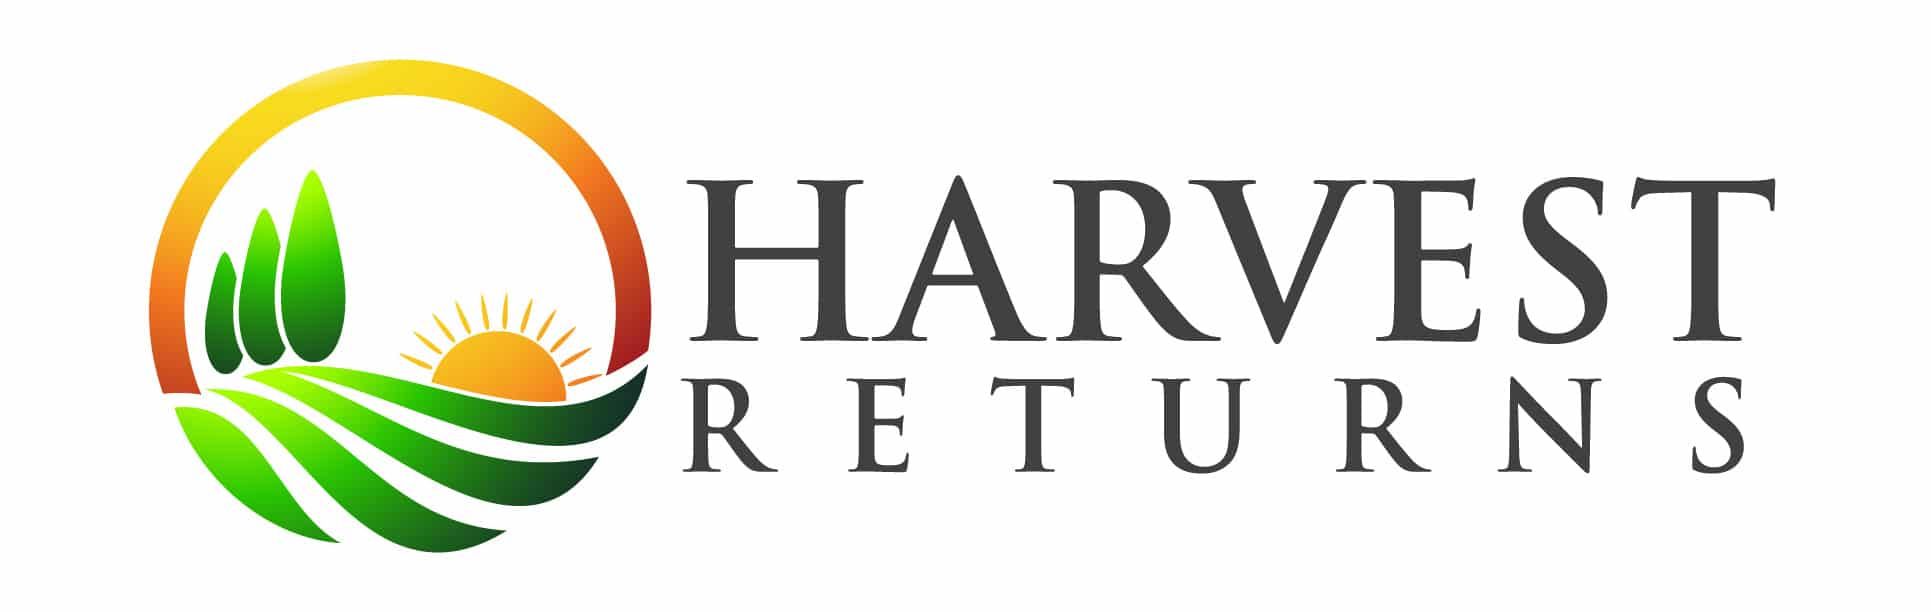 Harvest returns logo